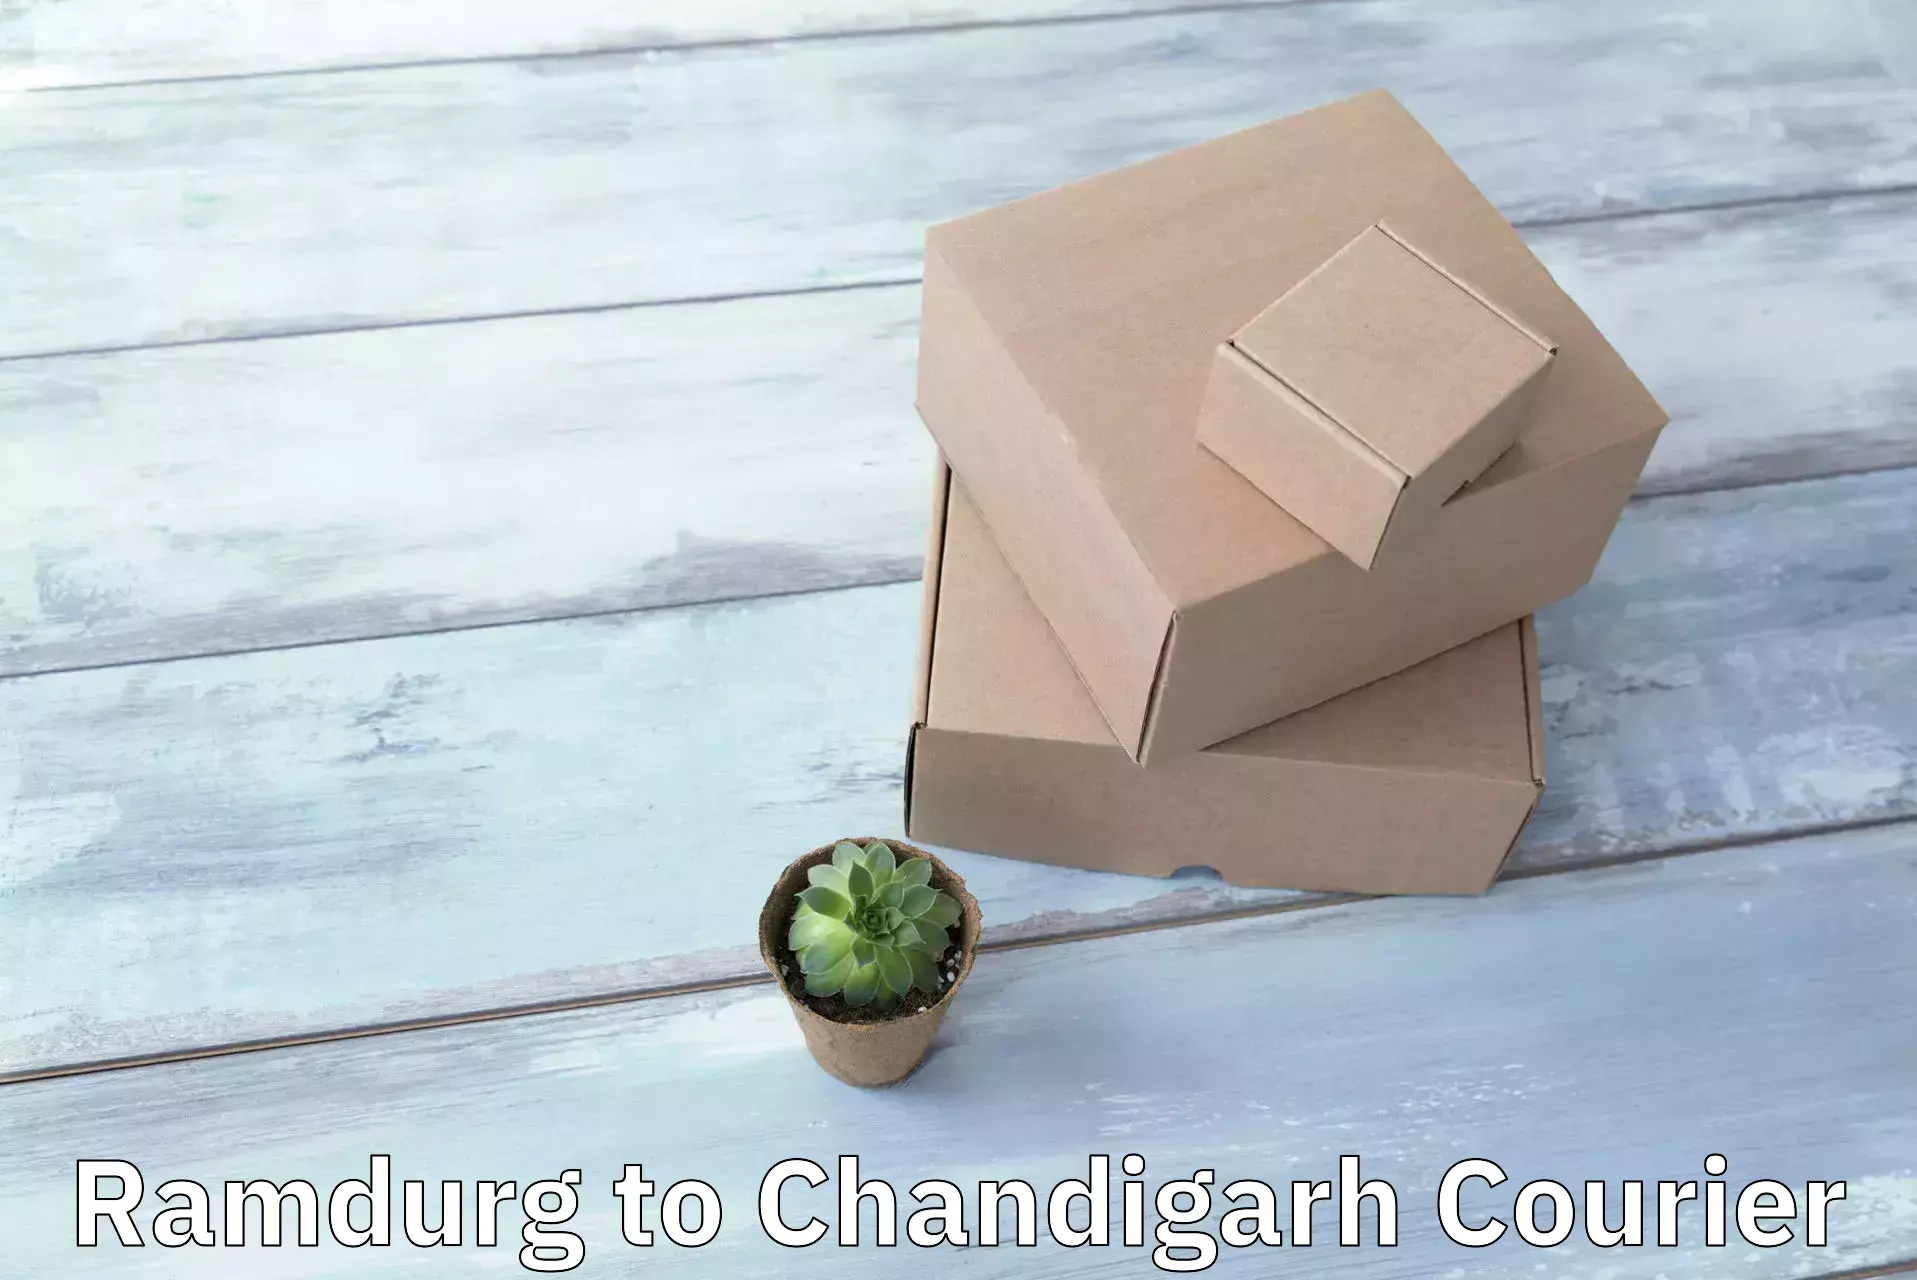 Efficient parcel service Ramdurg to Chandigarh